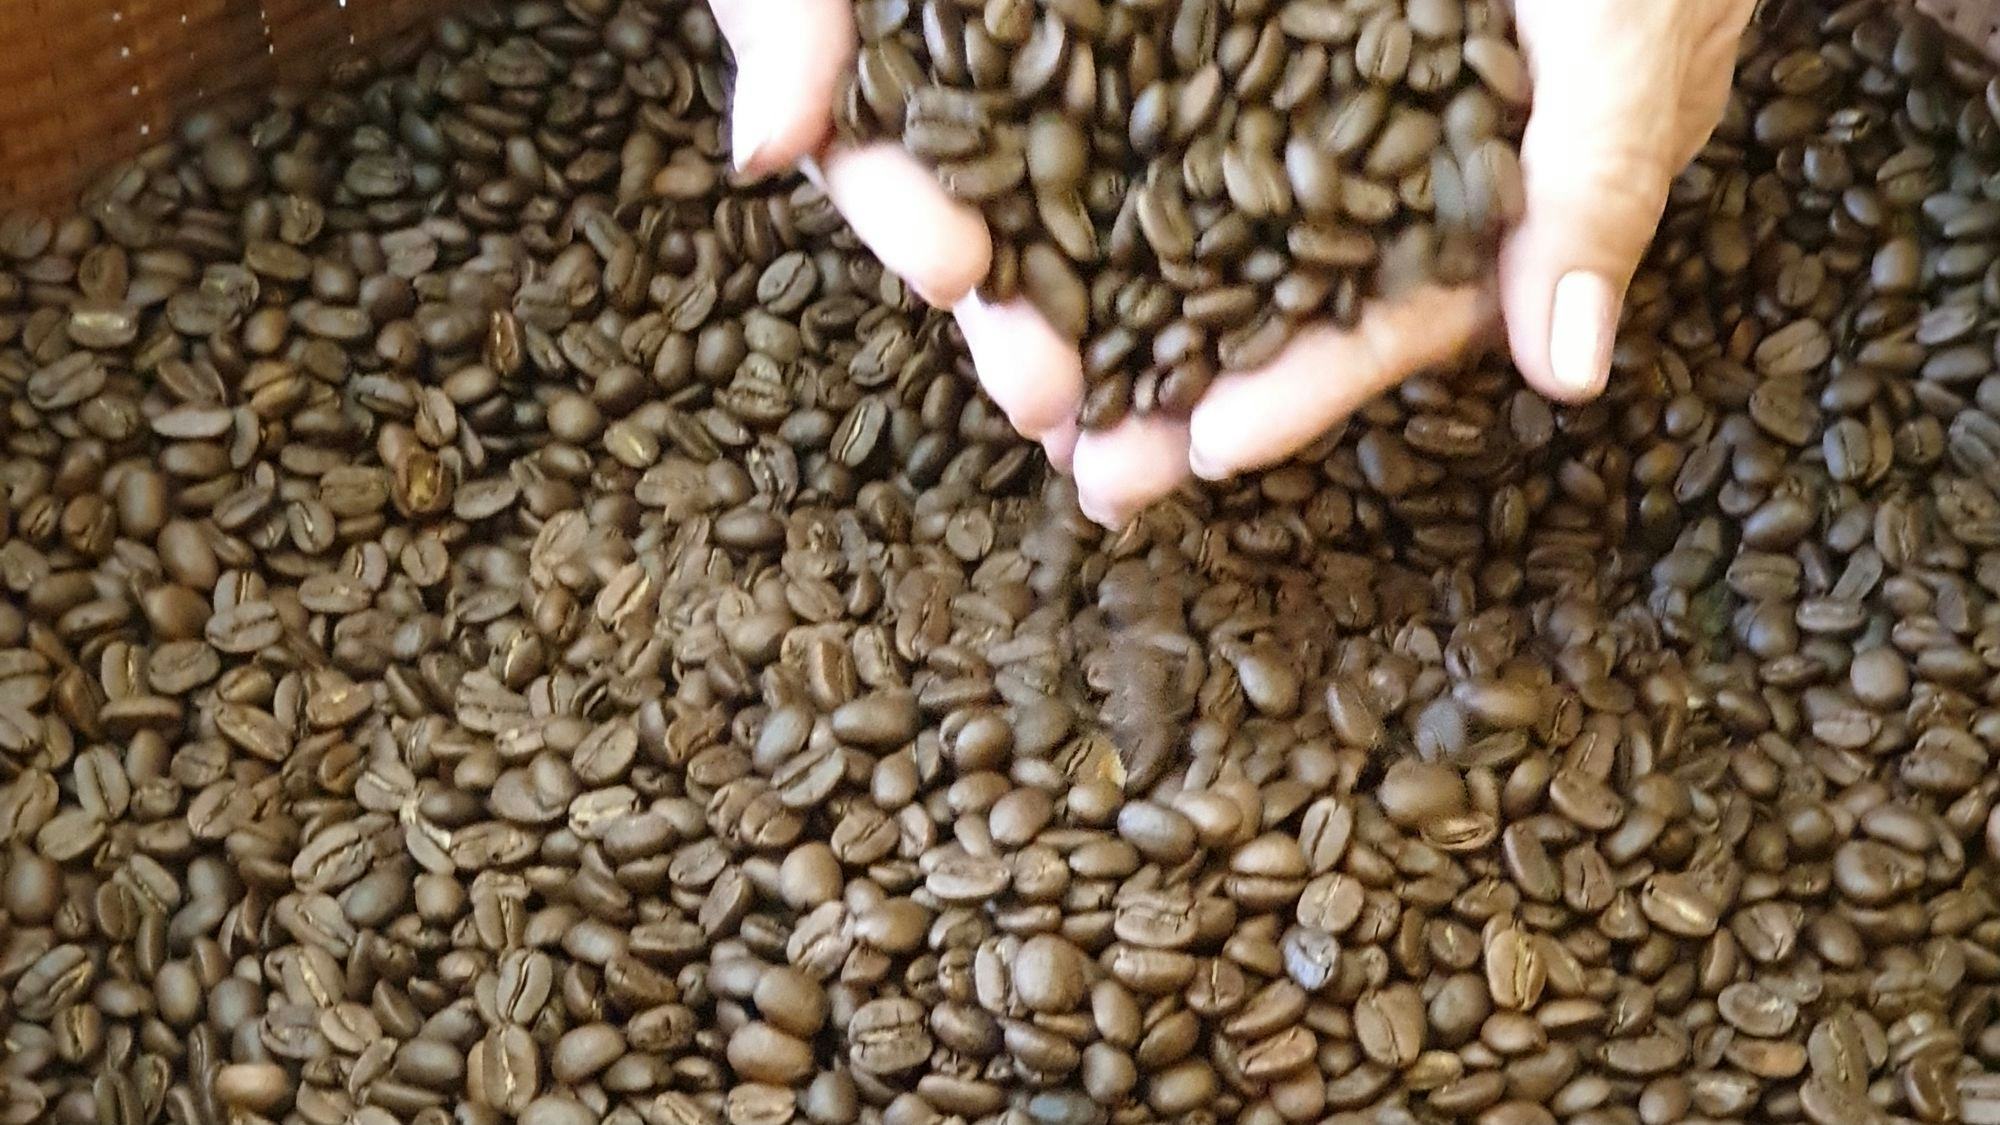 Phát Thành Coffee